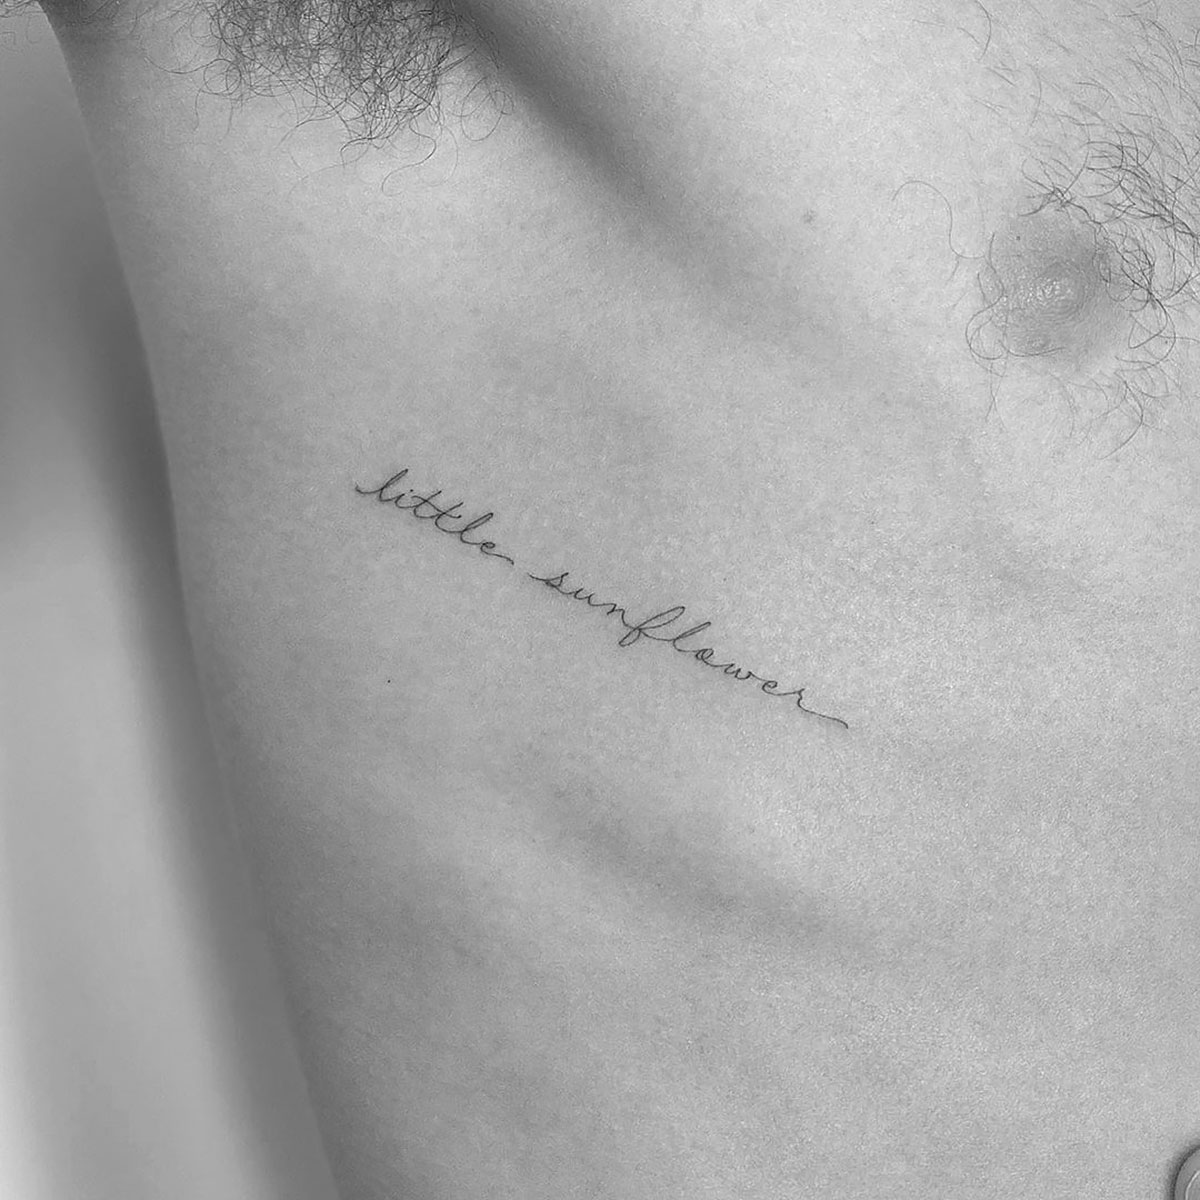 Shawn Mendes Tattoo Ideas | TikTok